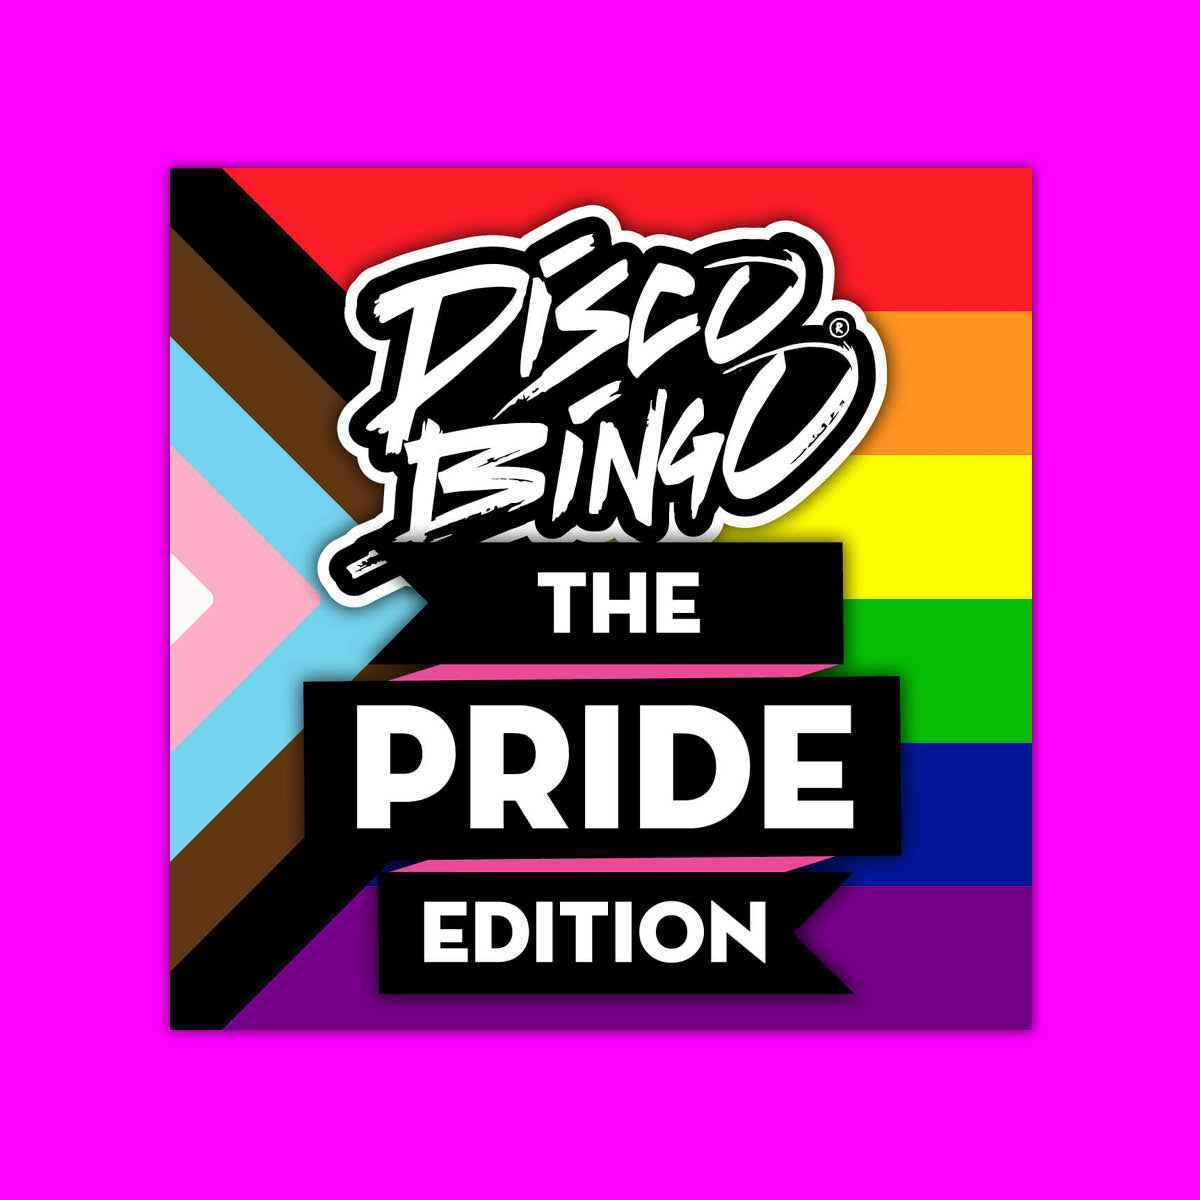 Disco Bingo The Pride Edition